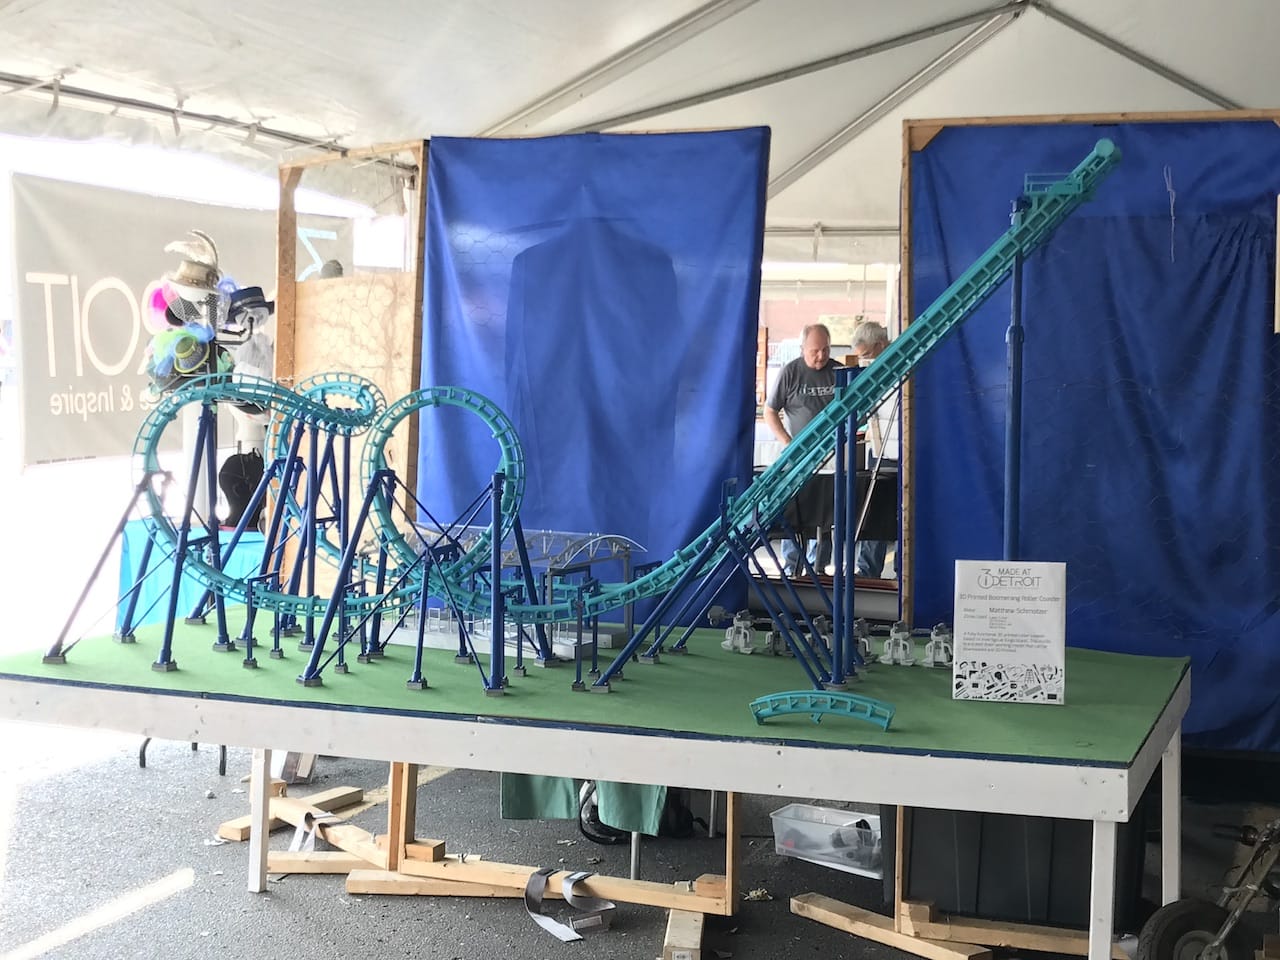  The 3D printed Invertigo Roller Coaster on display 